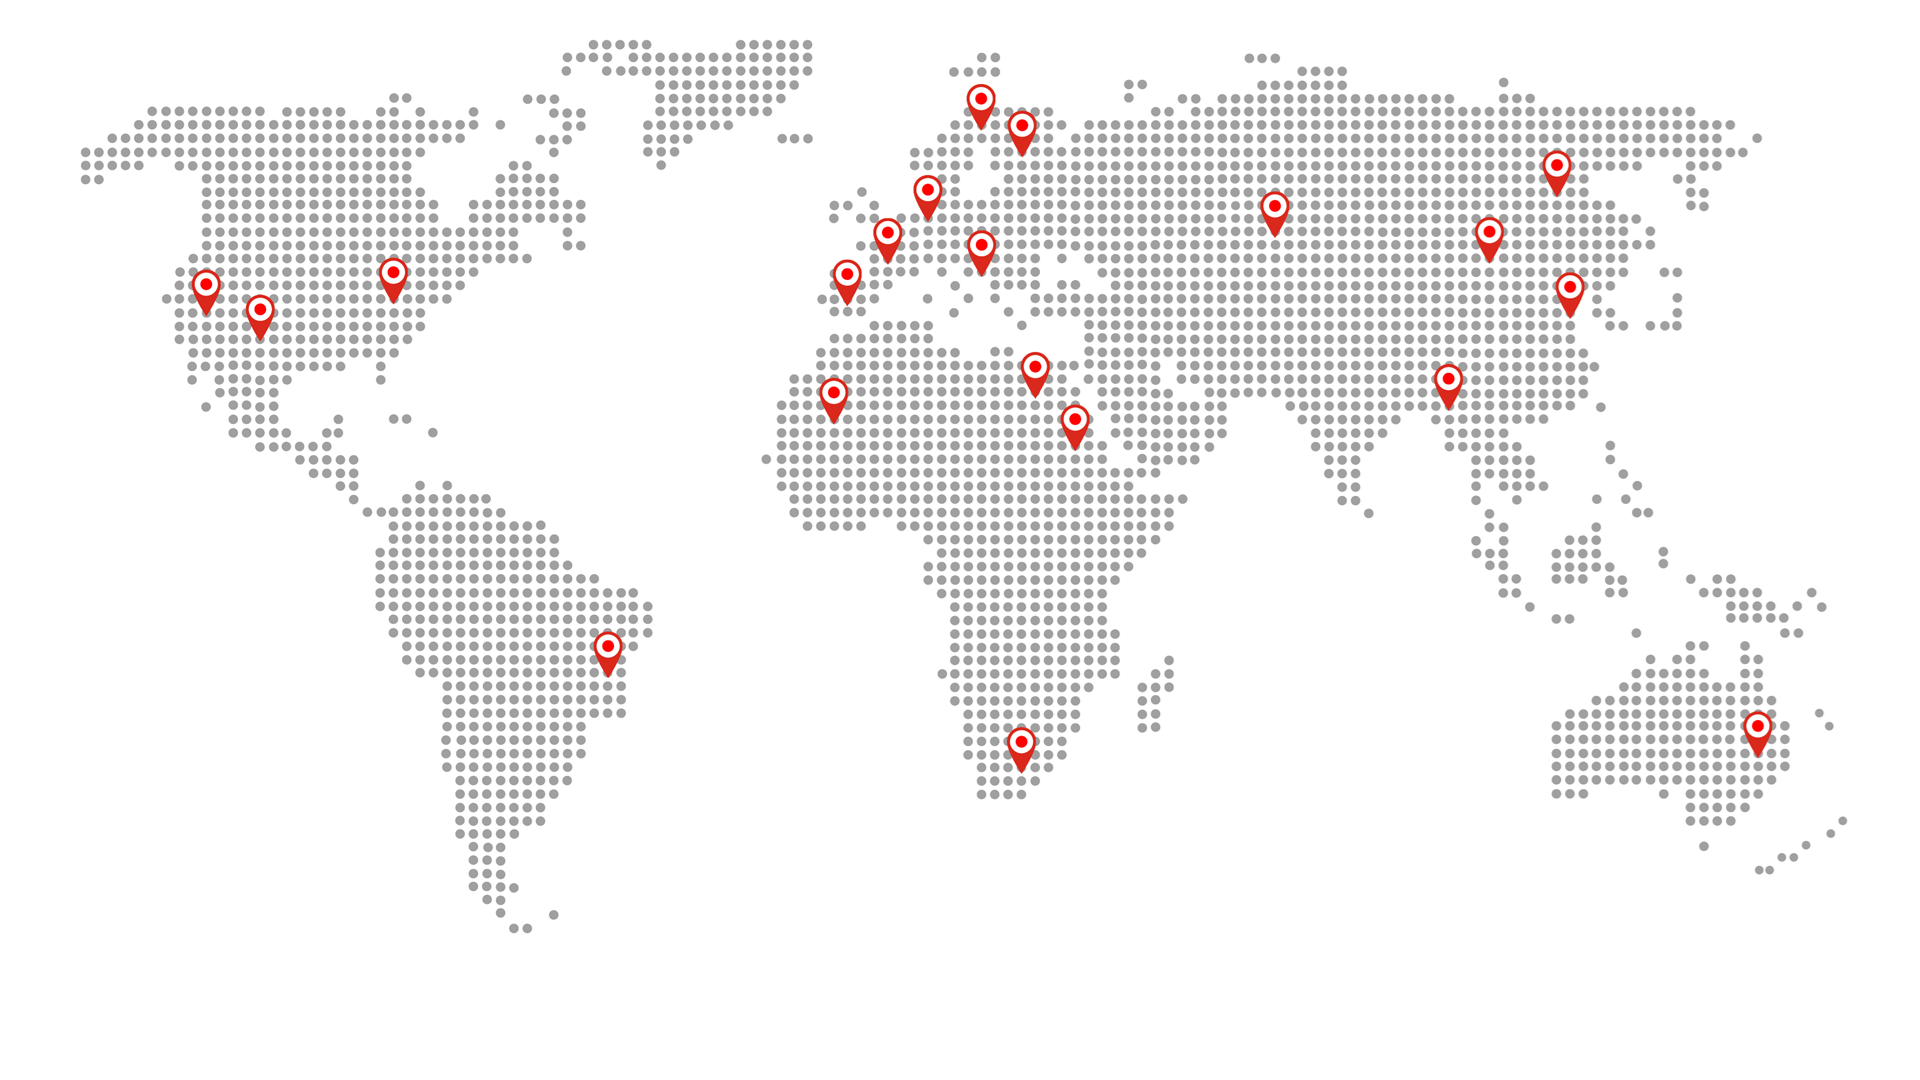 Een wereld kaart met verschillende plaatsen aangegeven met een pijltje.